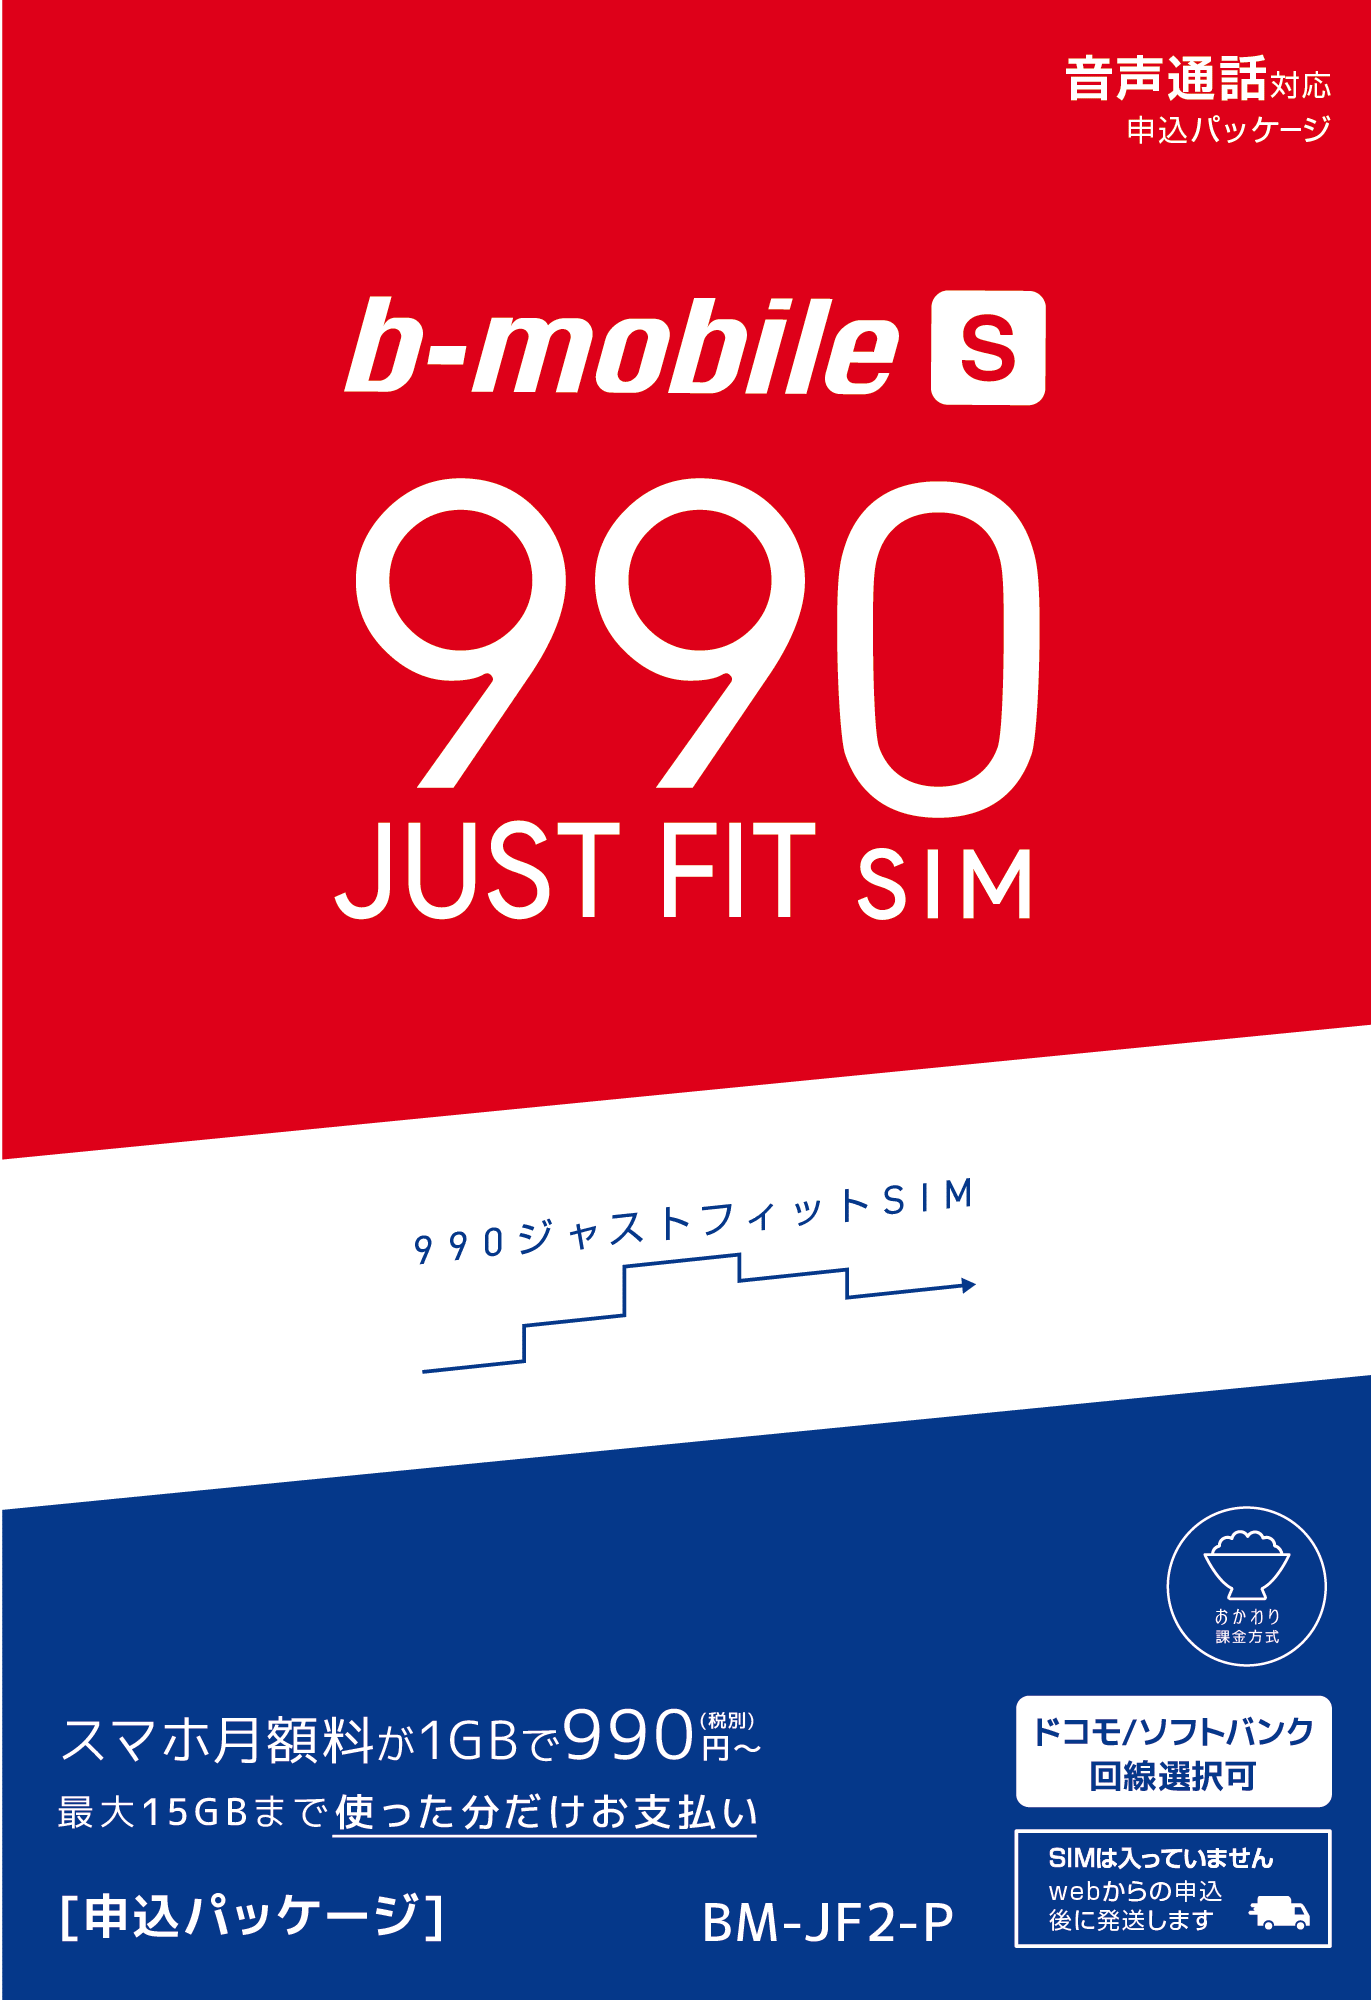 b-mobile S 990ジャストフィットSIMパッケージ画像